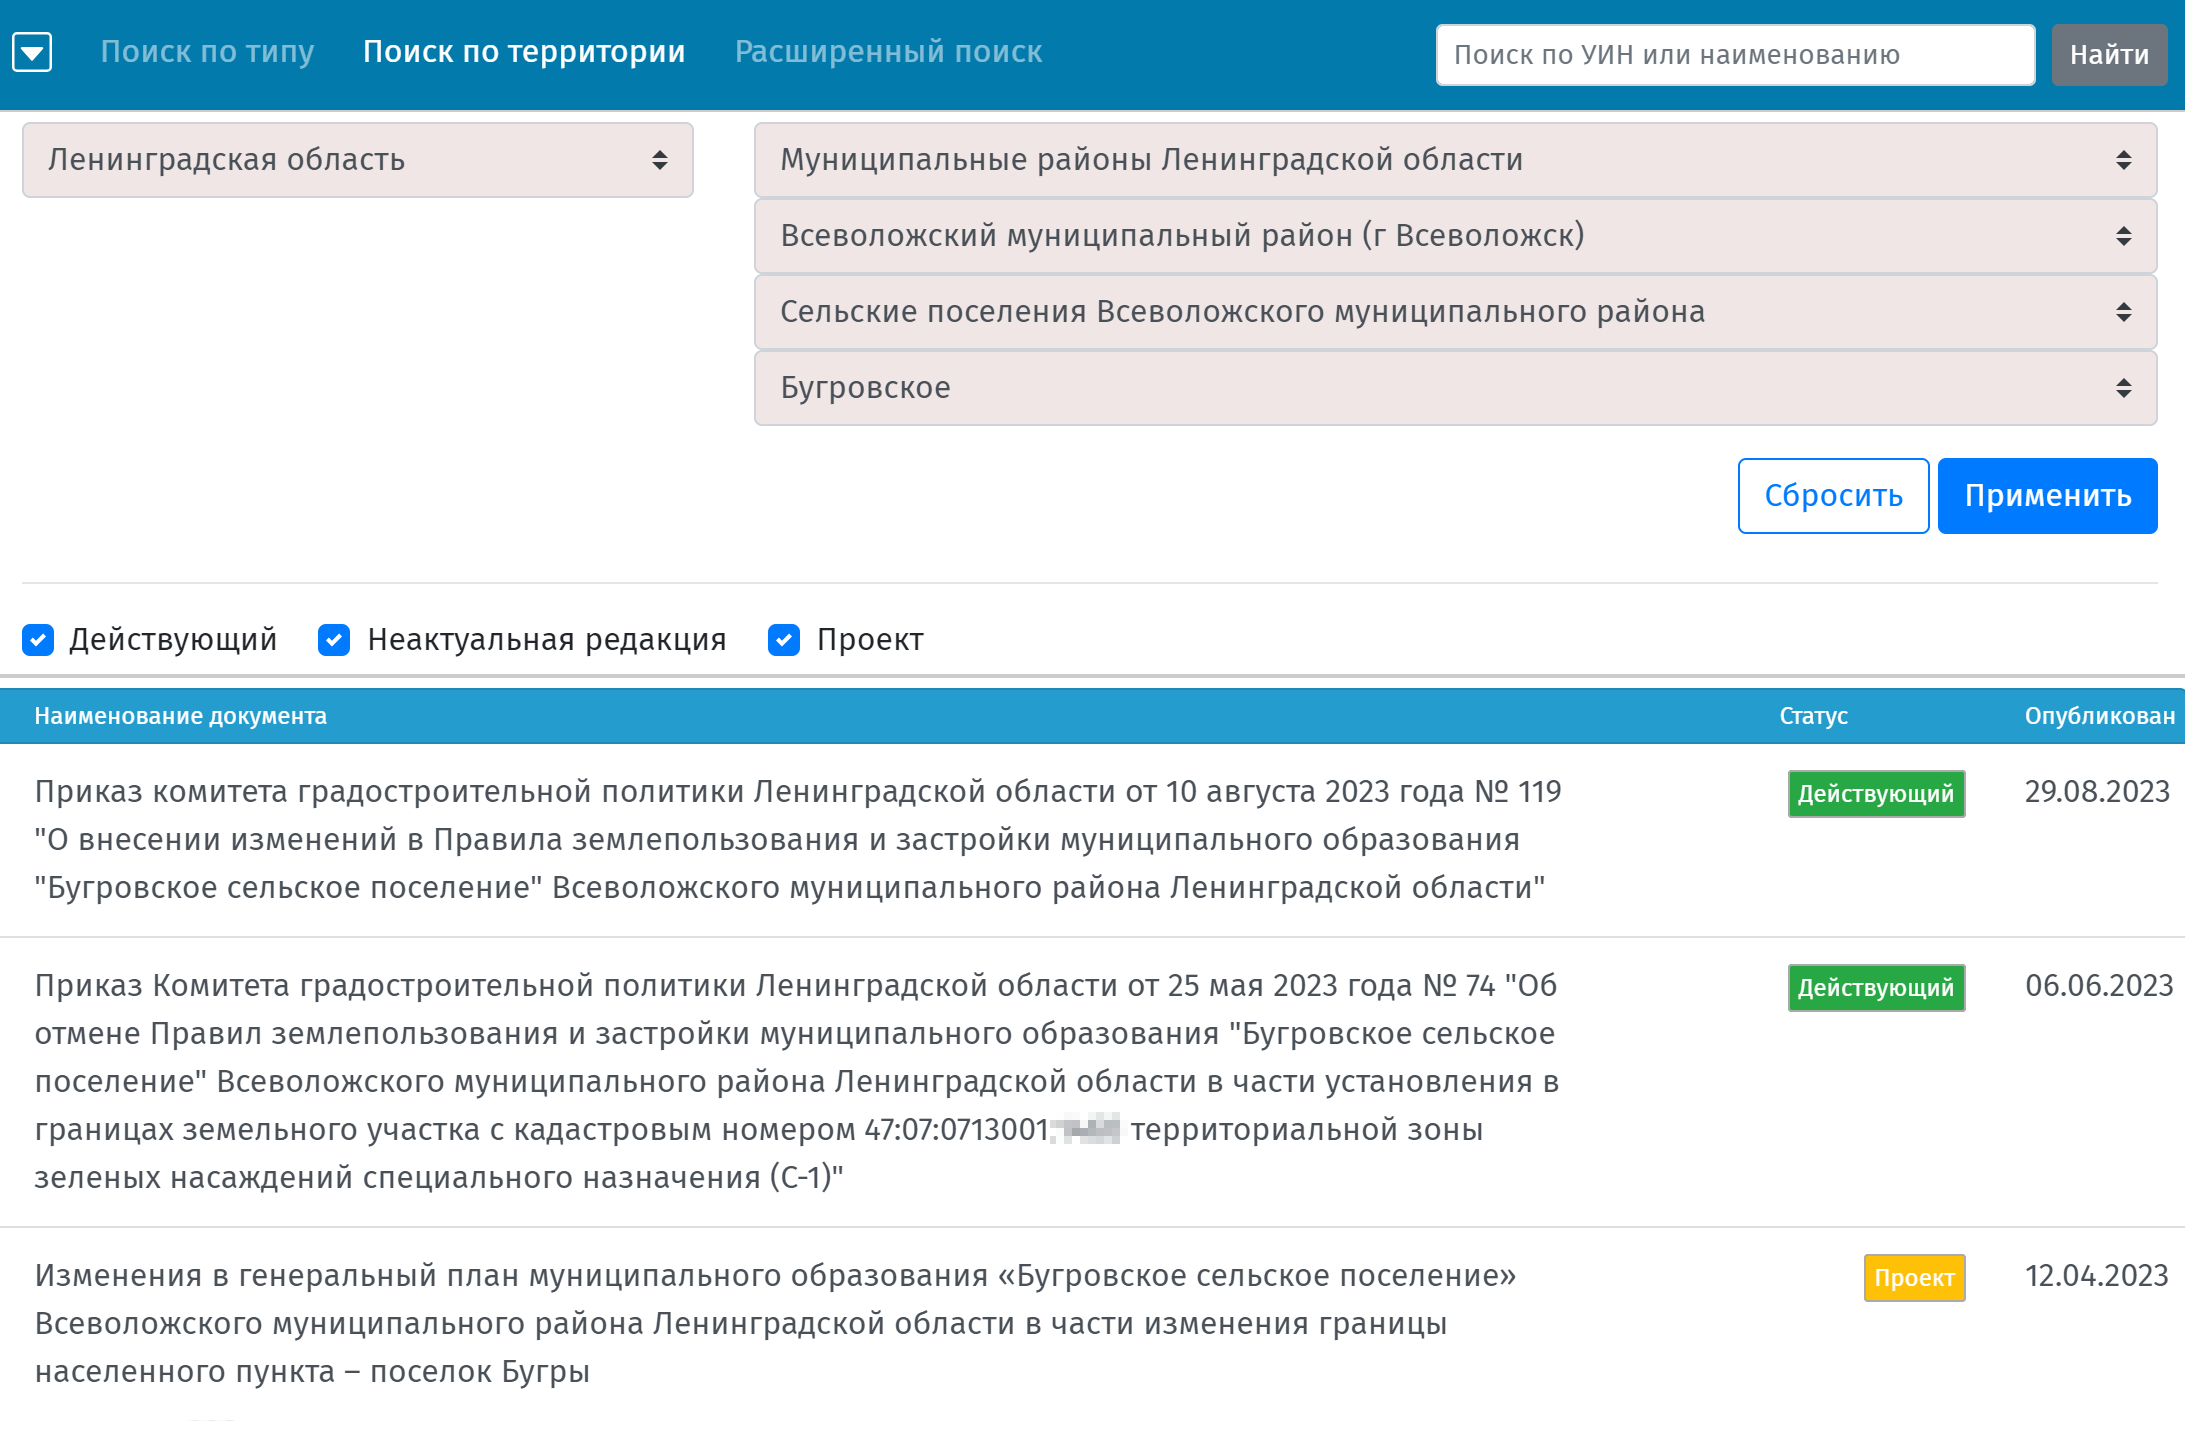 Еще ПЗЗ легко найти на сайте «ФГИС ТП». Нужно перейти в раздел «Документы» и выбрать вкладку «Поиск по территории». Если указать свой муниципальный округ, появится список действующих актов. Но учитывайте, что данные в системе могут быть не самые свежие. Источник: fgistp.economy.gov.ru